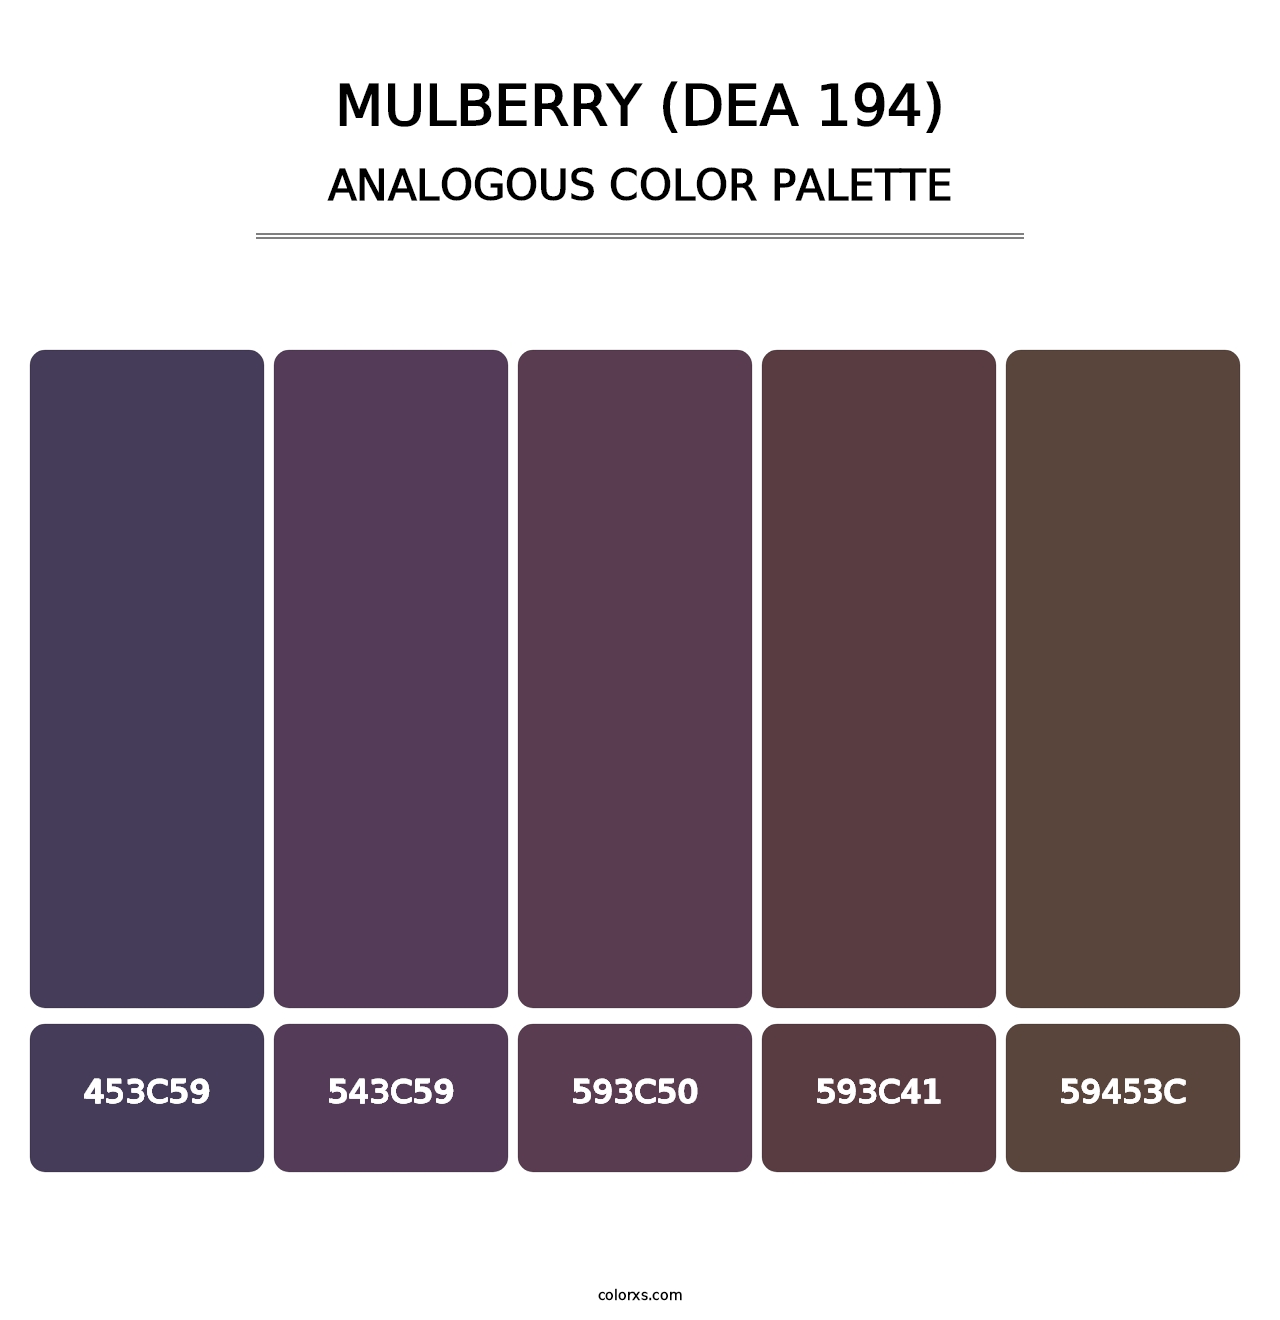 Mulberry (DEA 194) - Analogous Color Palette